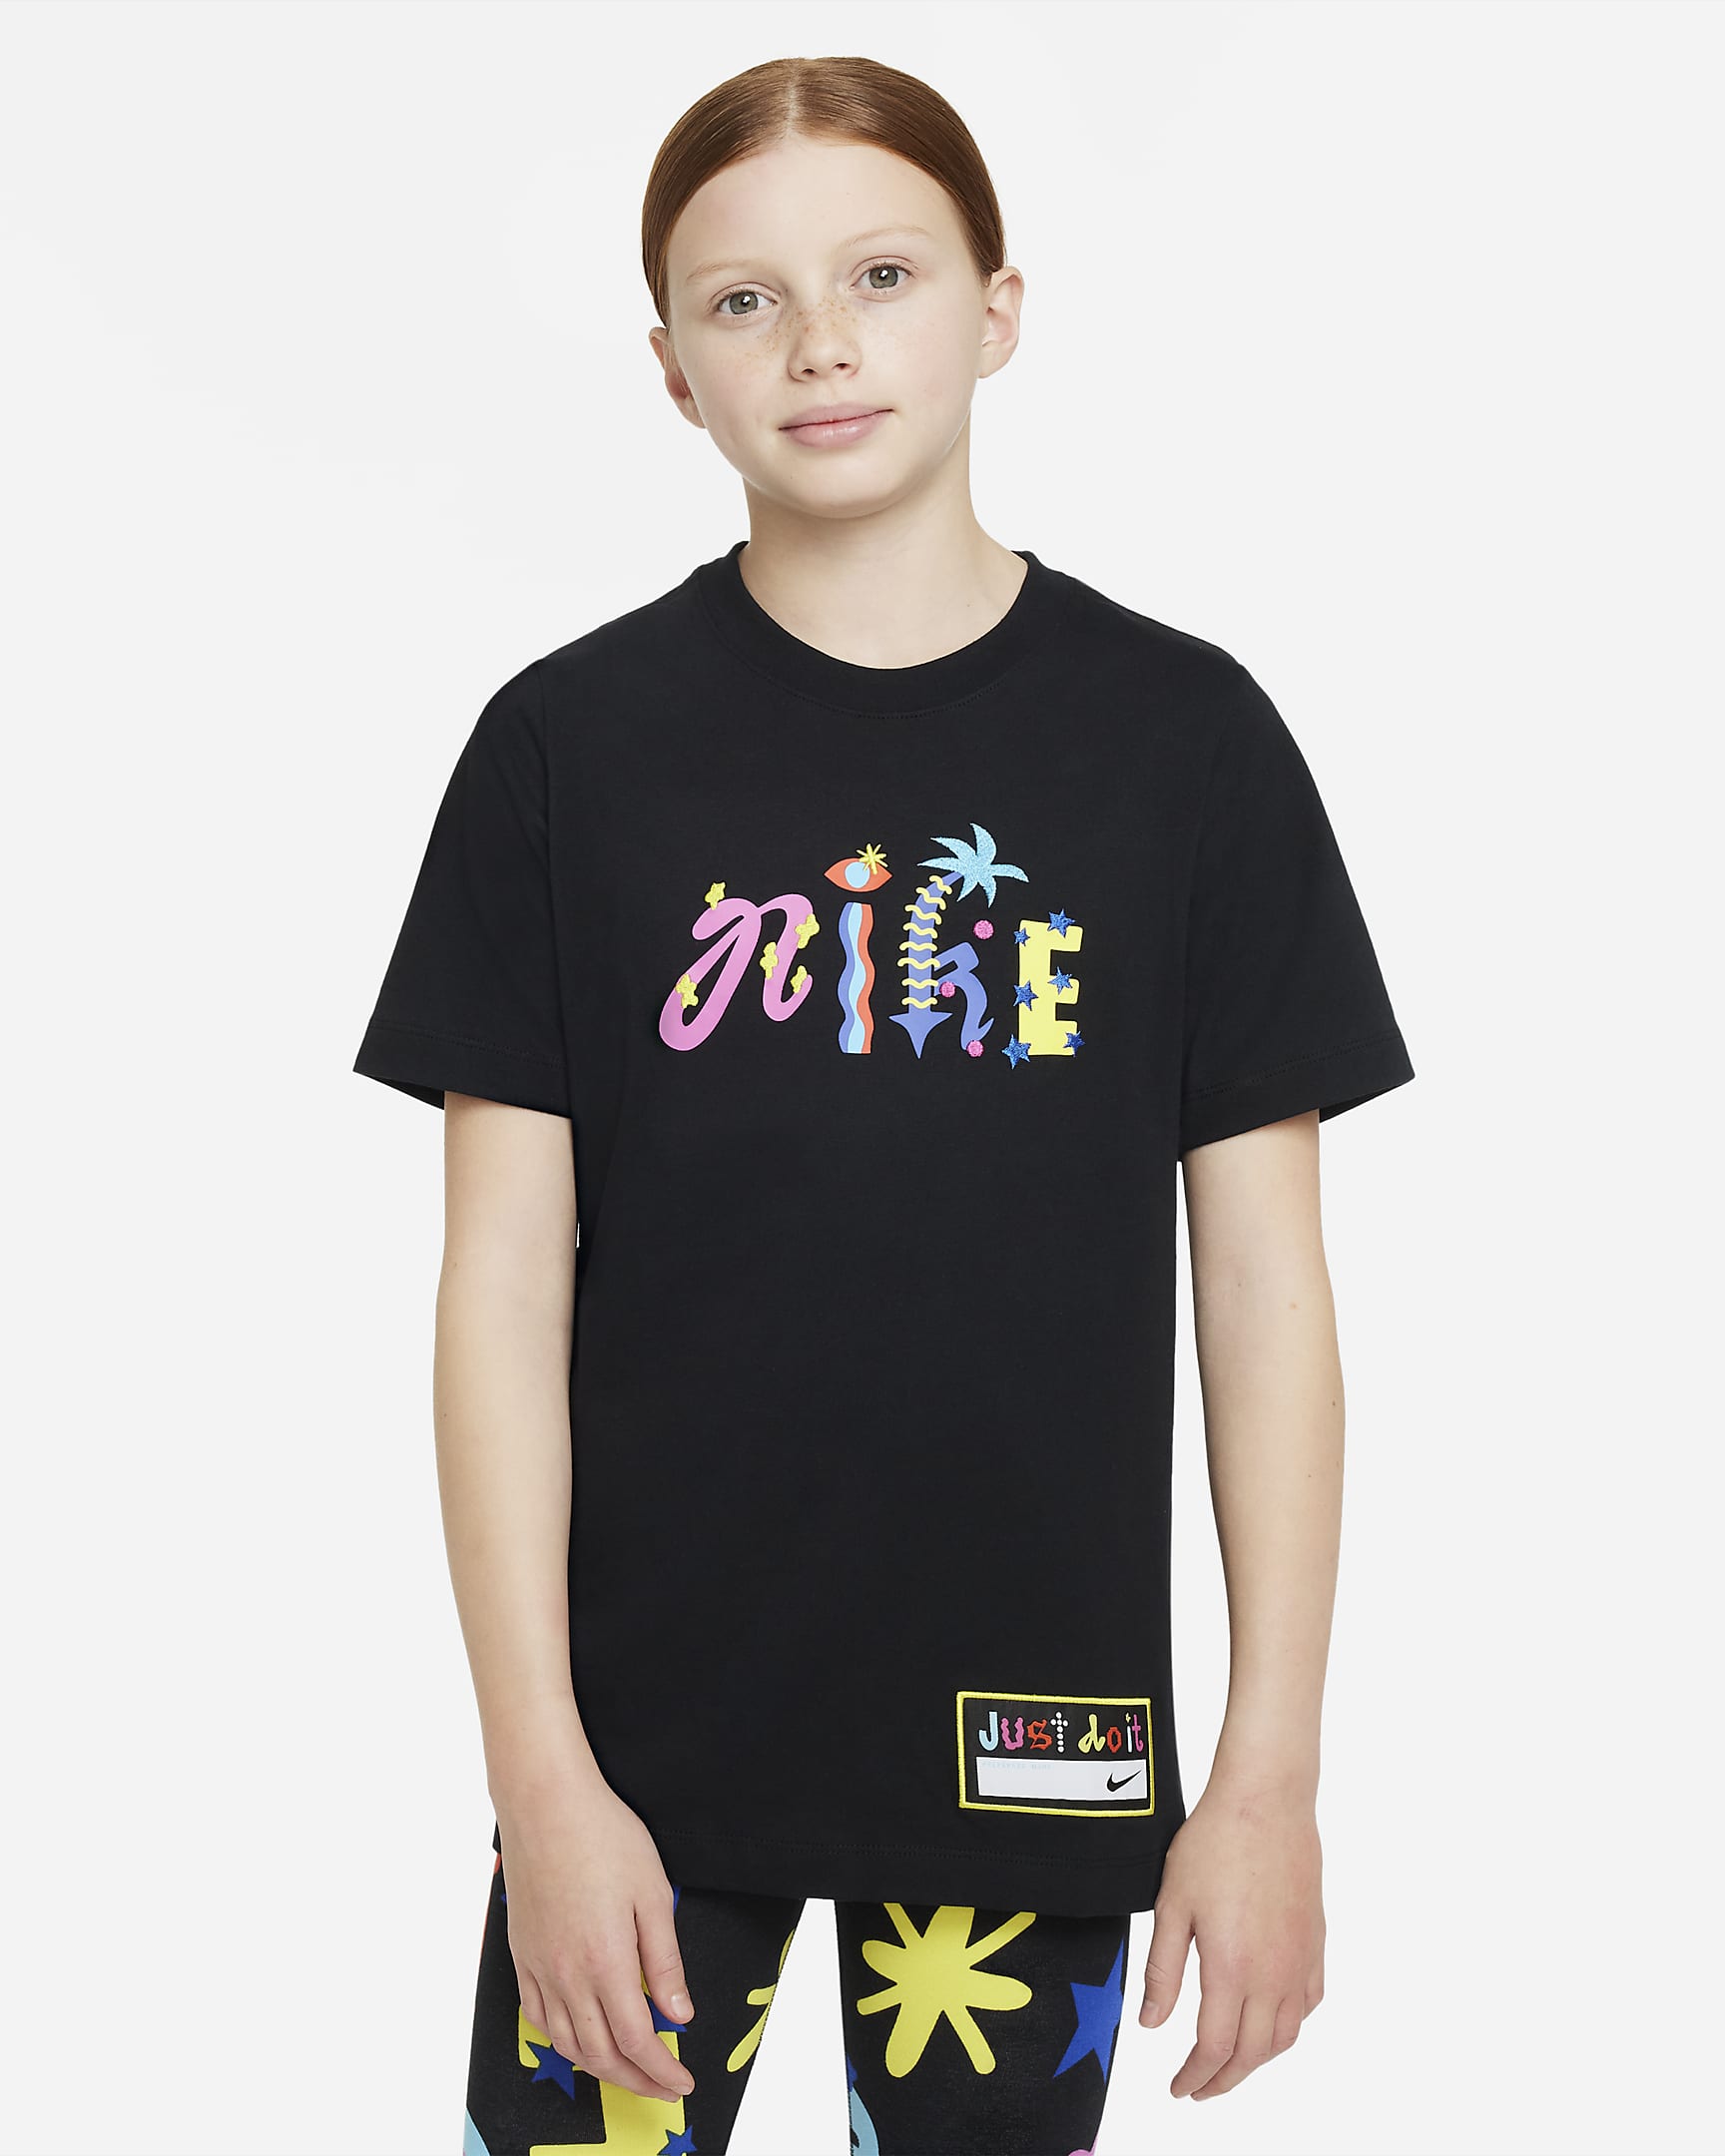 Nike Sportswear Older Kids' T-Shirt. Nike MY